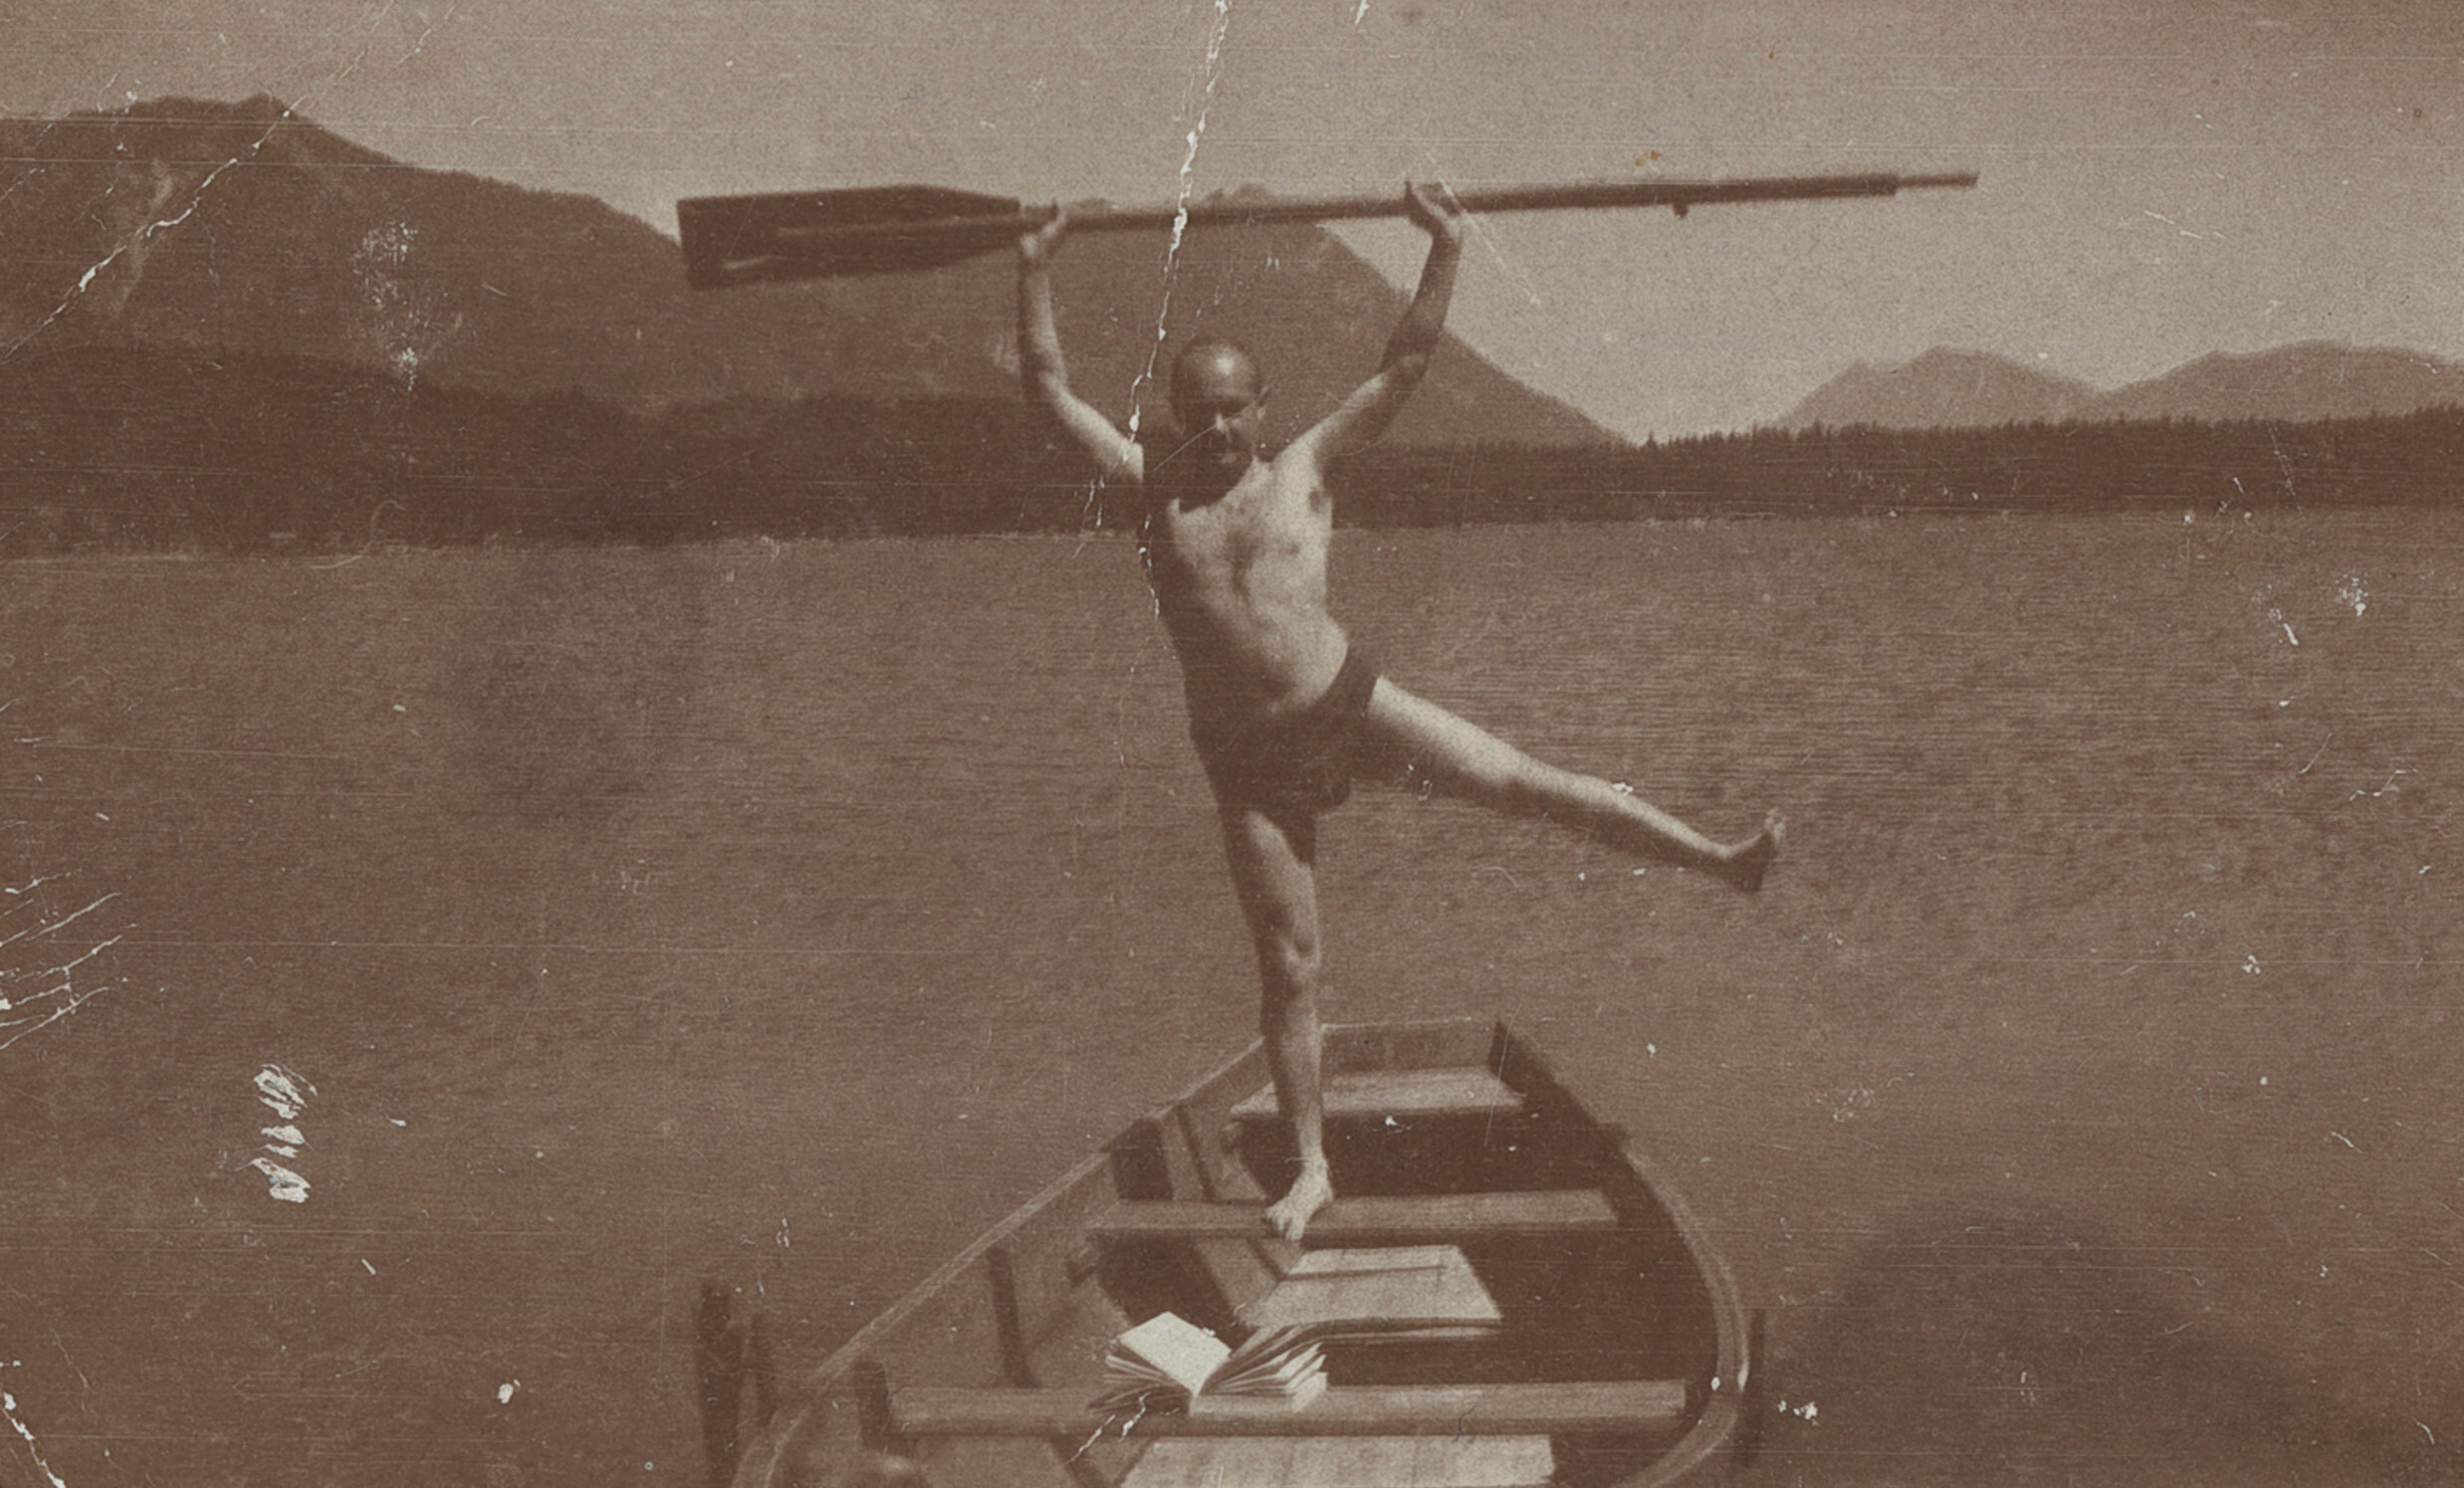 Роман Вишняк на озере Целль-ам-Зее, Зальцбург, Австрия, 1928 г. Фотограф Роман Вишняк